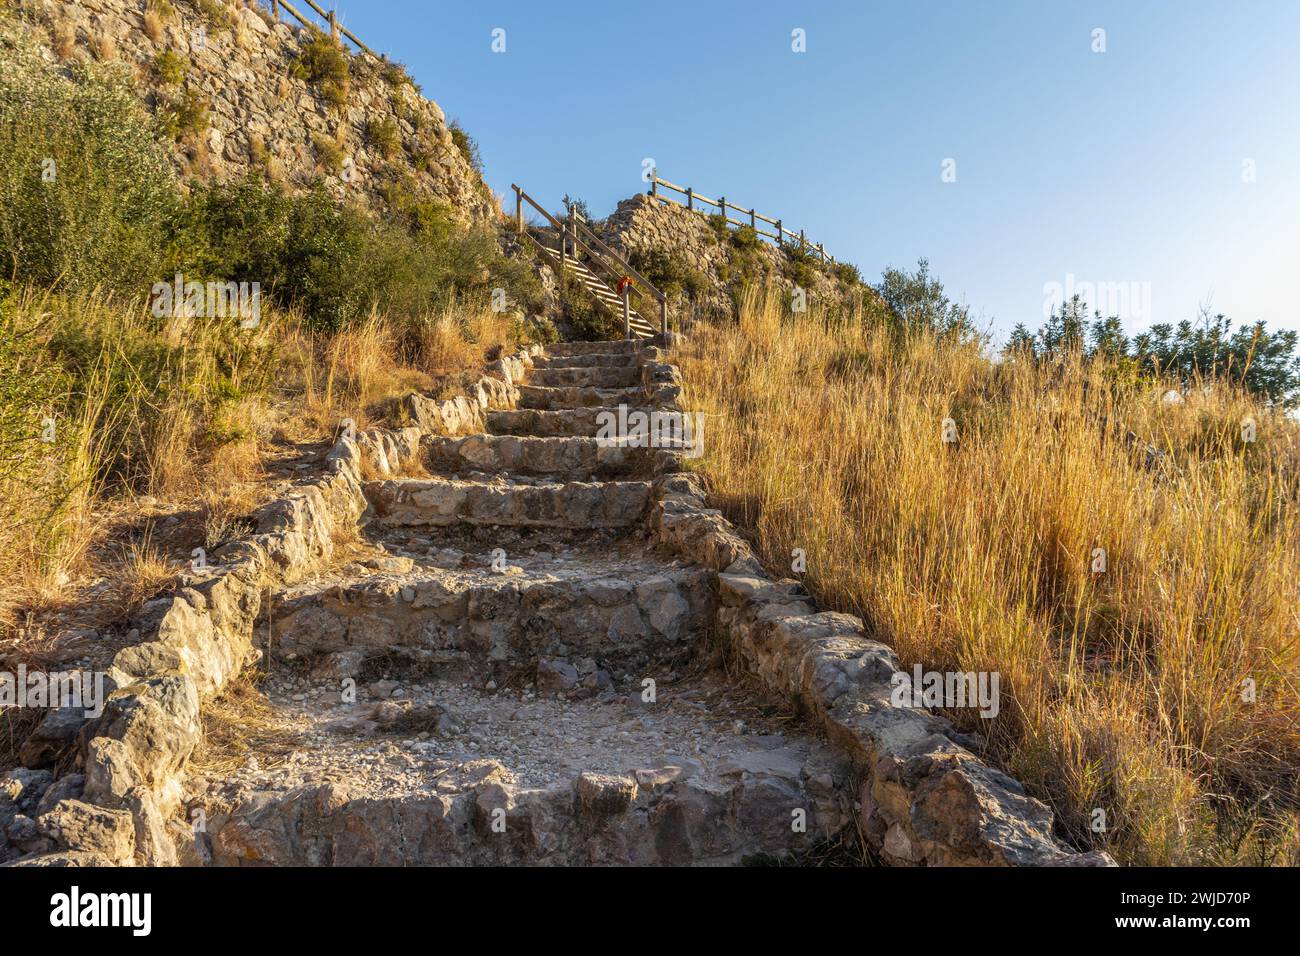 Voyage dans le passé : escalier en pierre au château de Santa Ana, Oliva, Espagne Banque D'Images